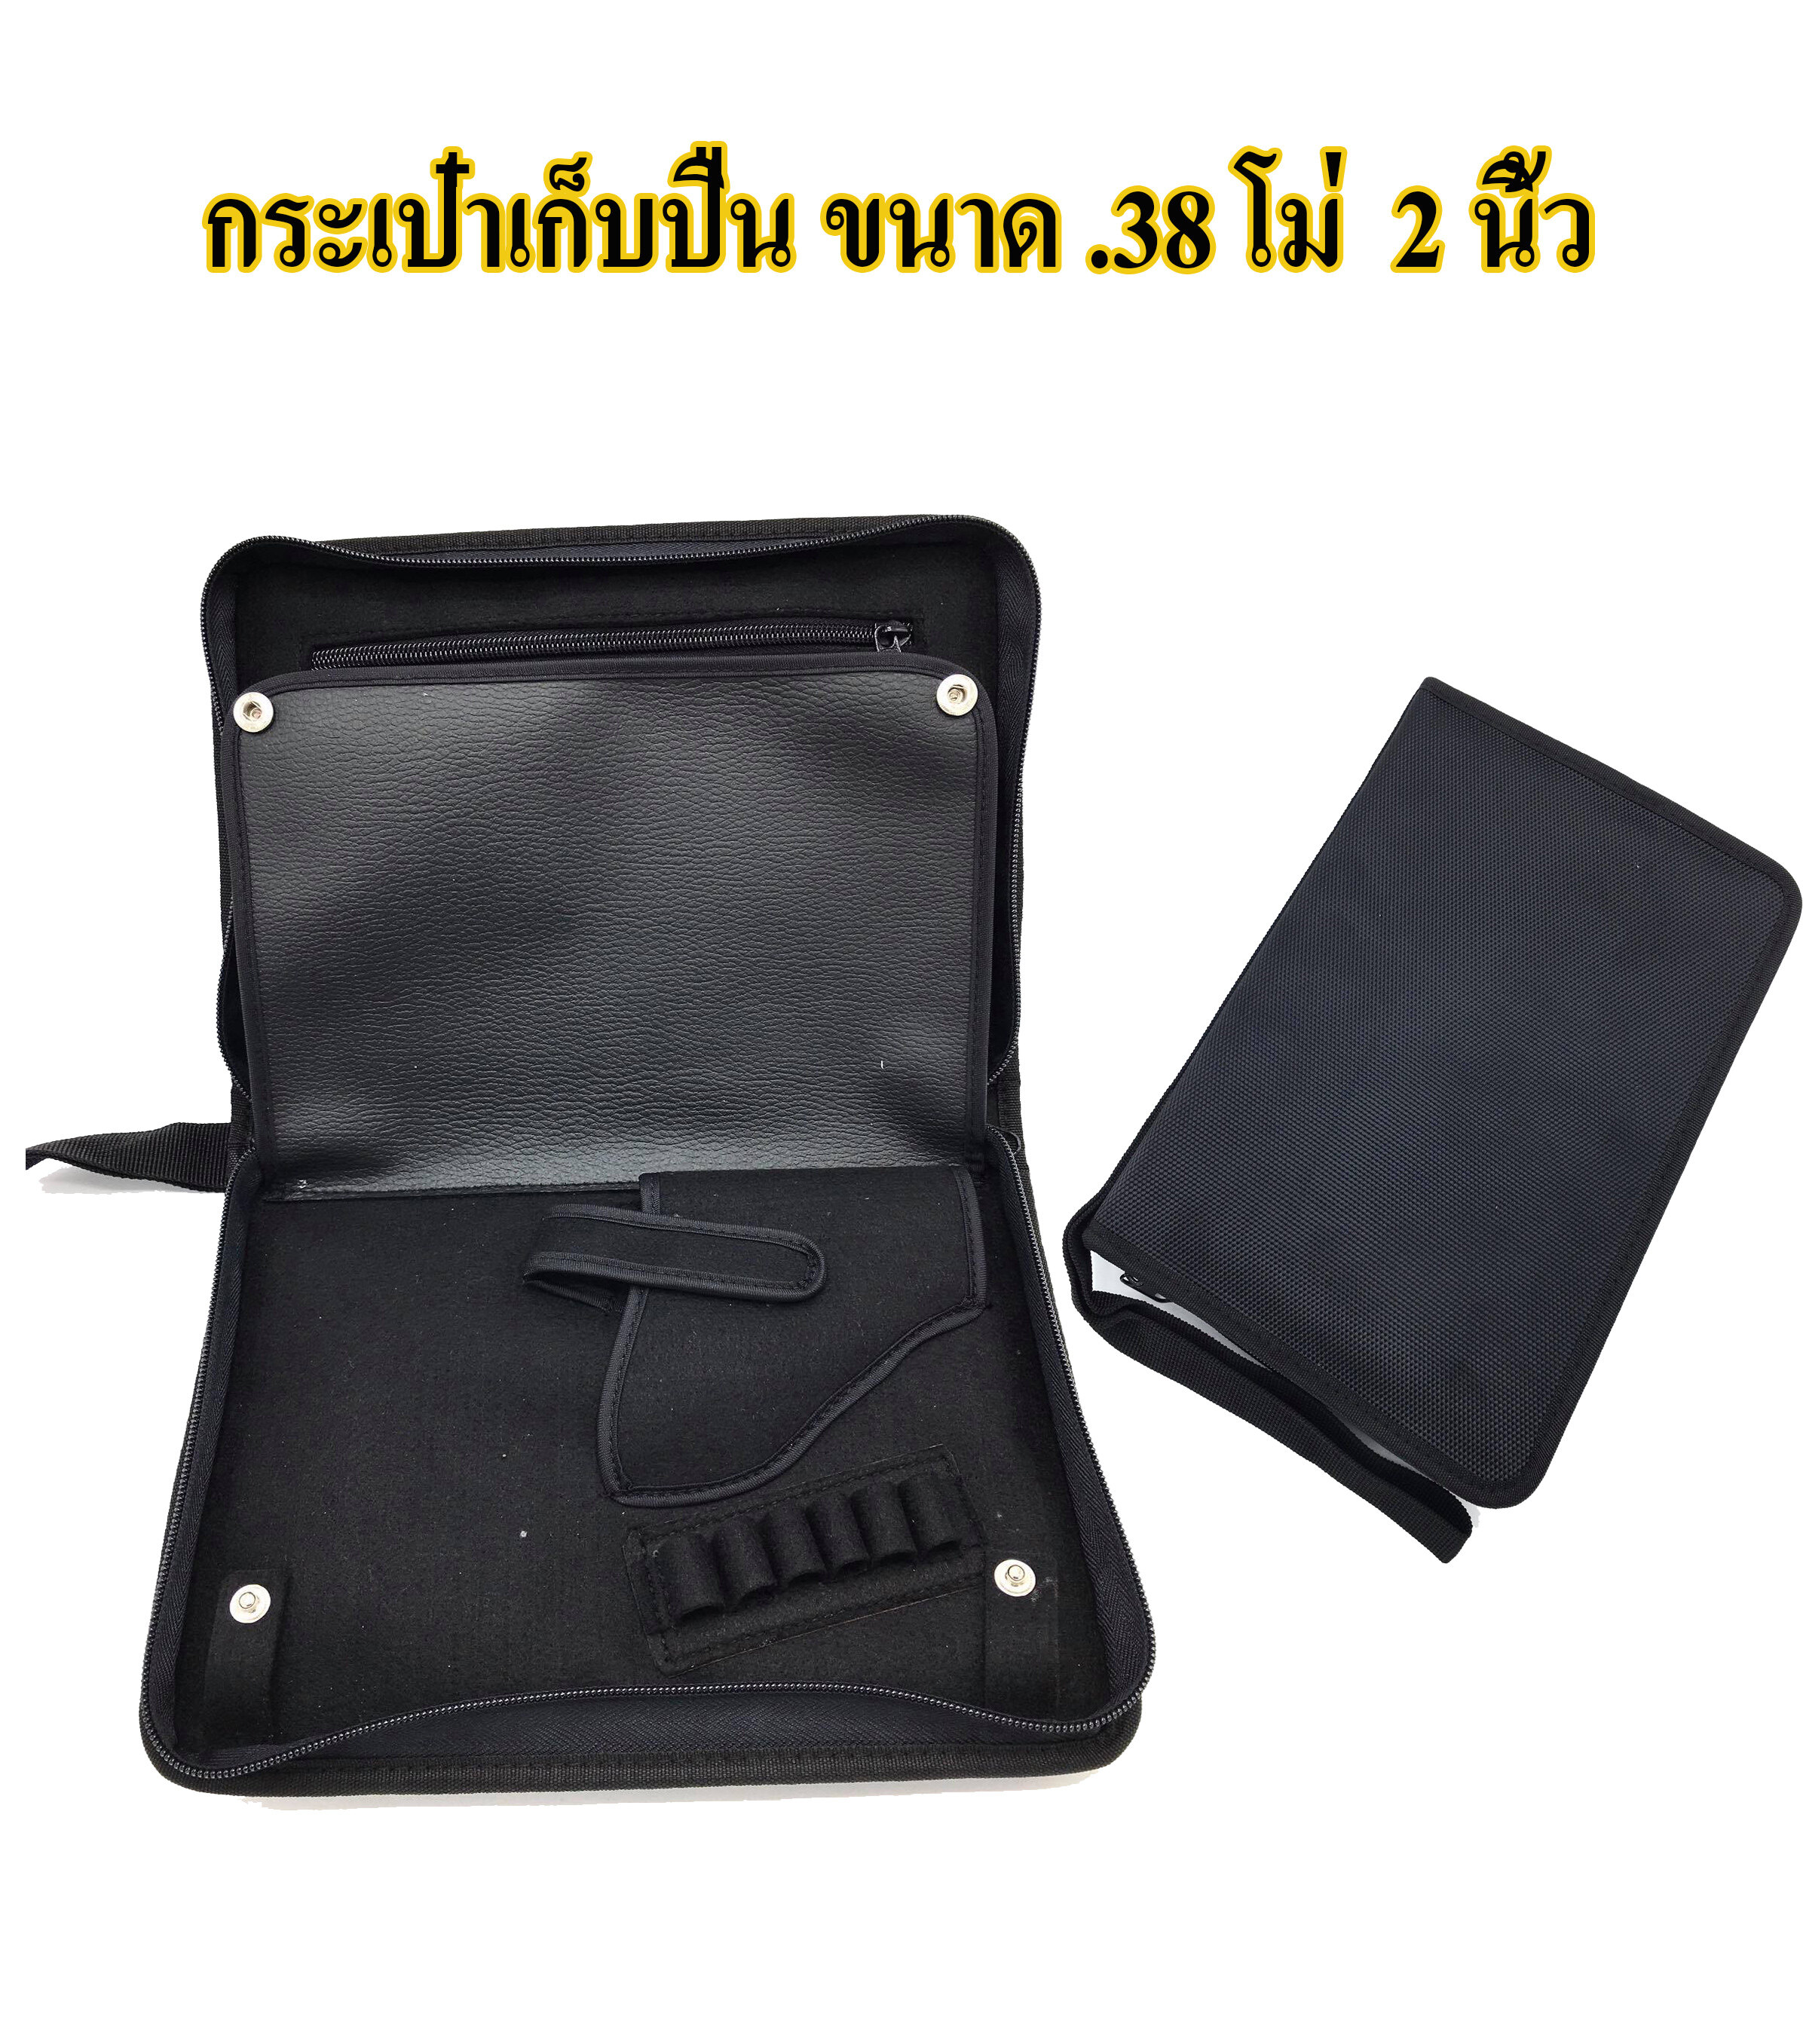 กระเป๋าใส่ปืน ลูกโม่ .38 ขนาด 2 นิ้ว สามารถใช้เป็นกระเป๋าเอกสารได้ (สีดำ)  ส่งฟรี. 